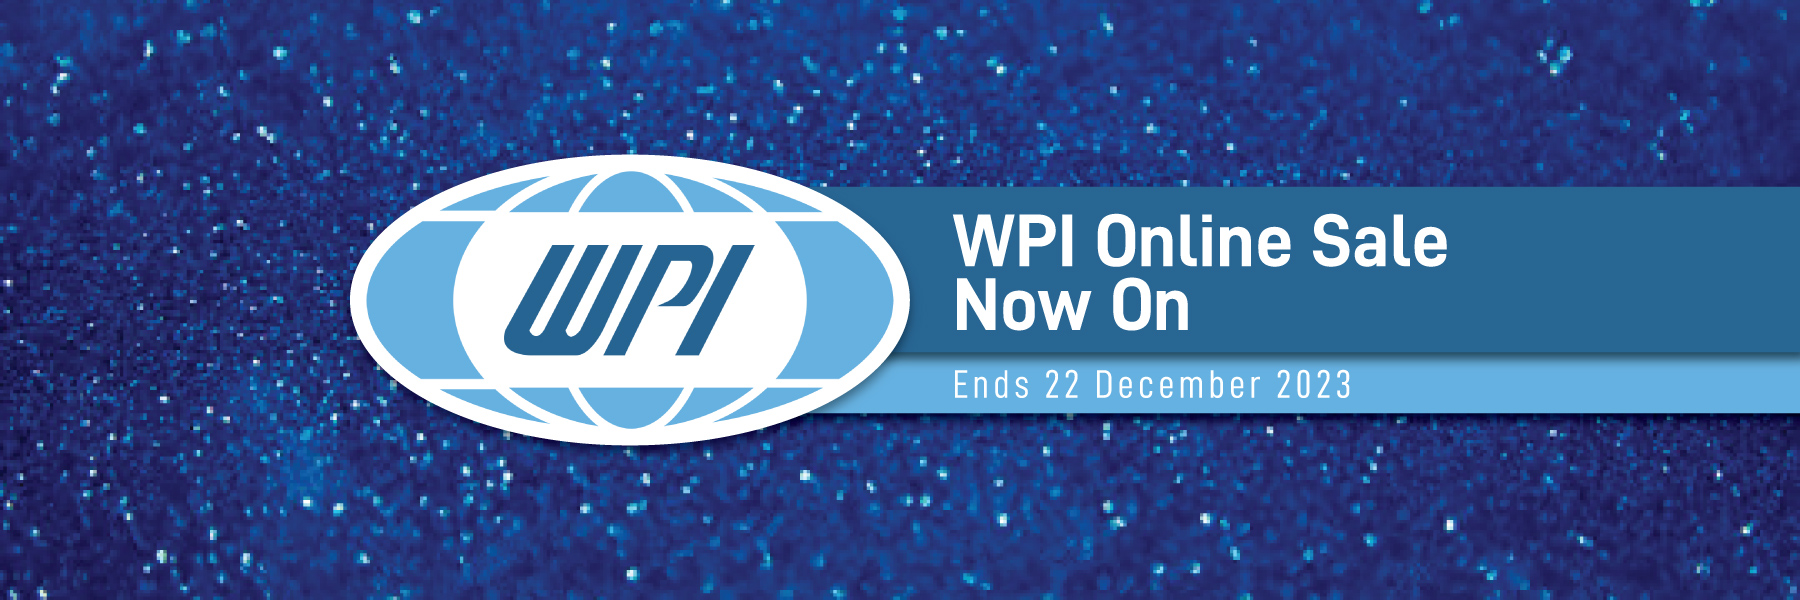 WPI Online Sale